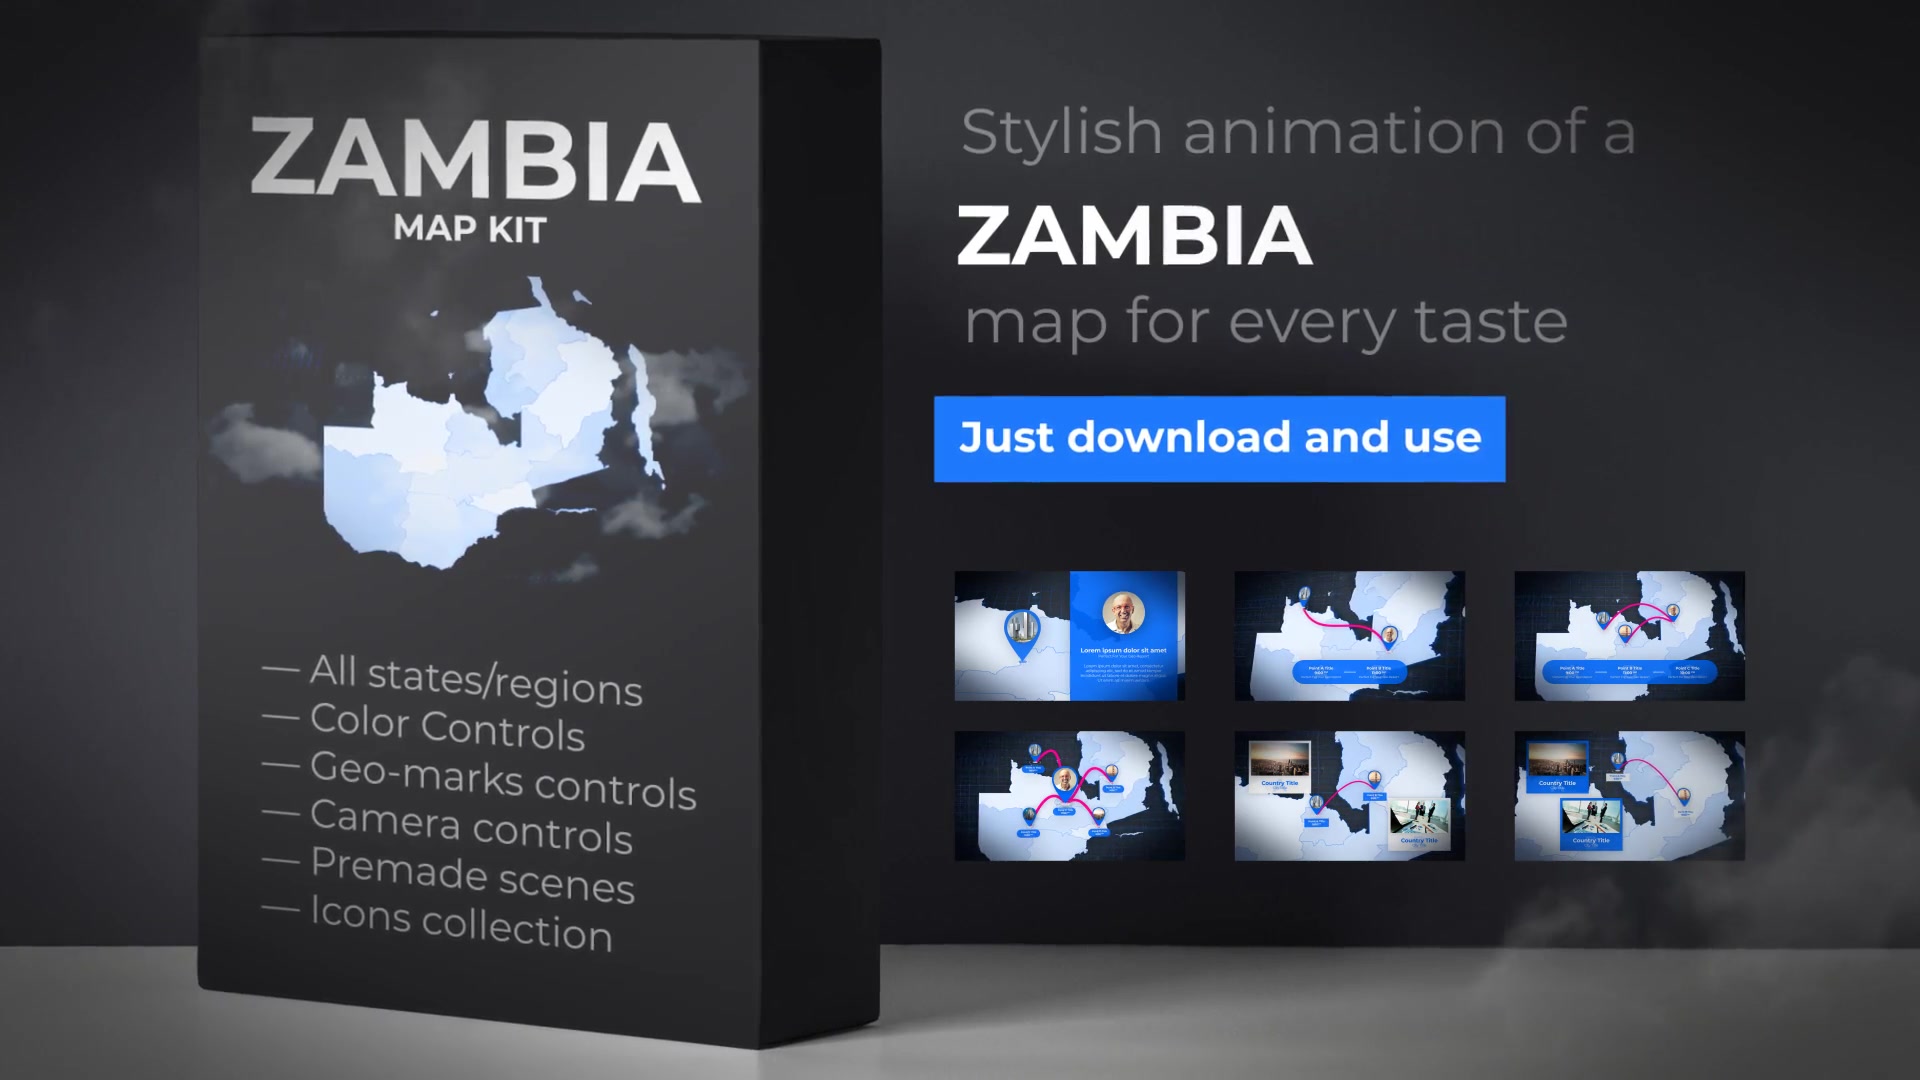 Zambia Map Republic of Zambia Map Kit Videohive 25052822 After Effects Image 11